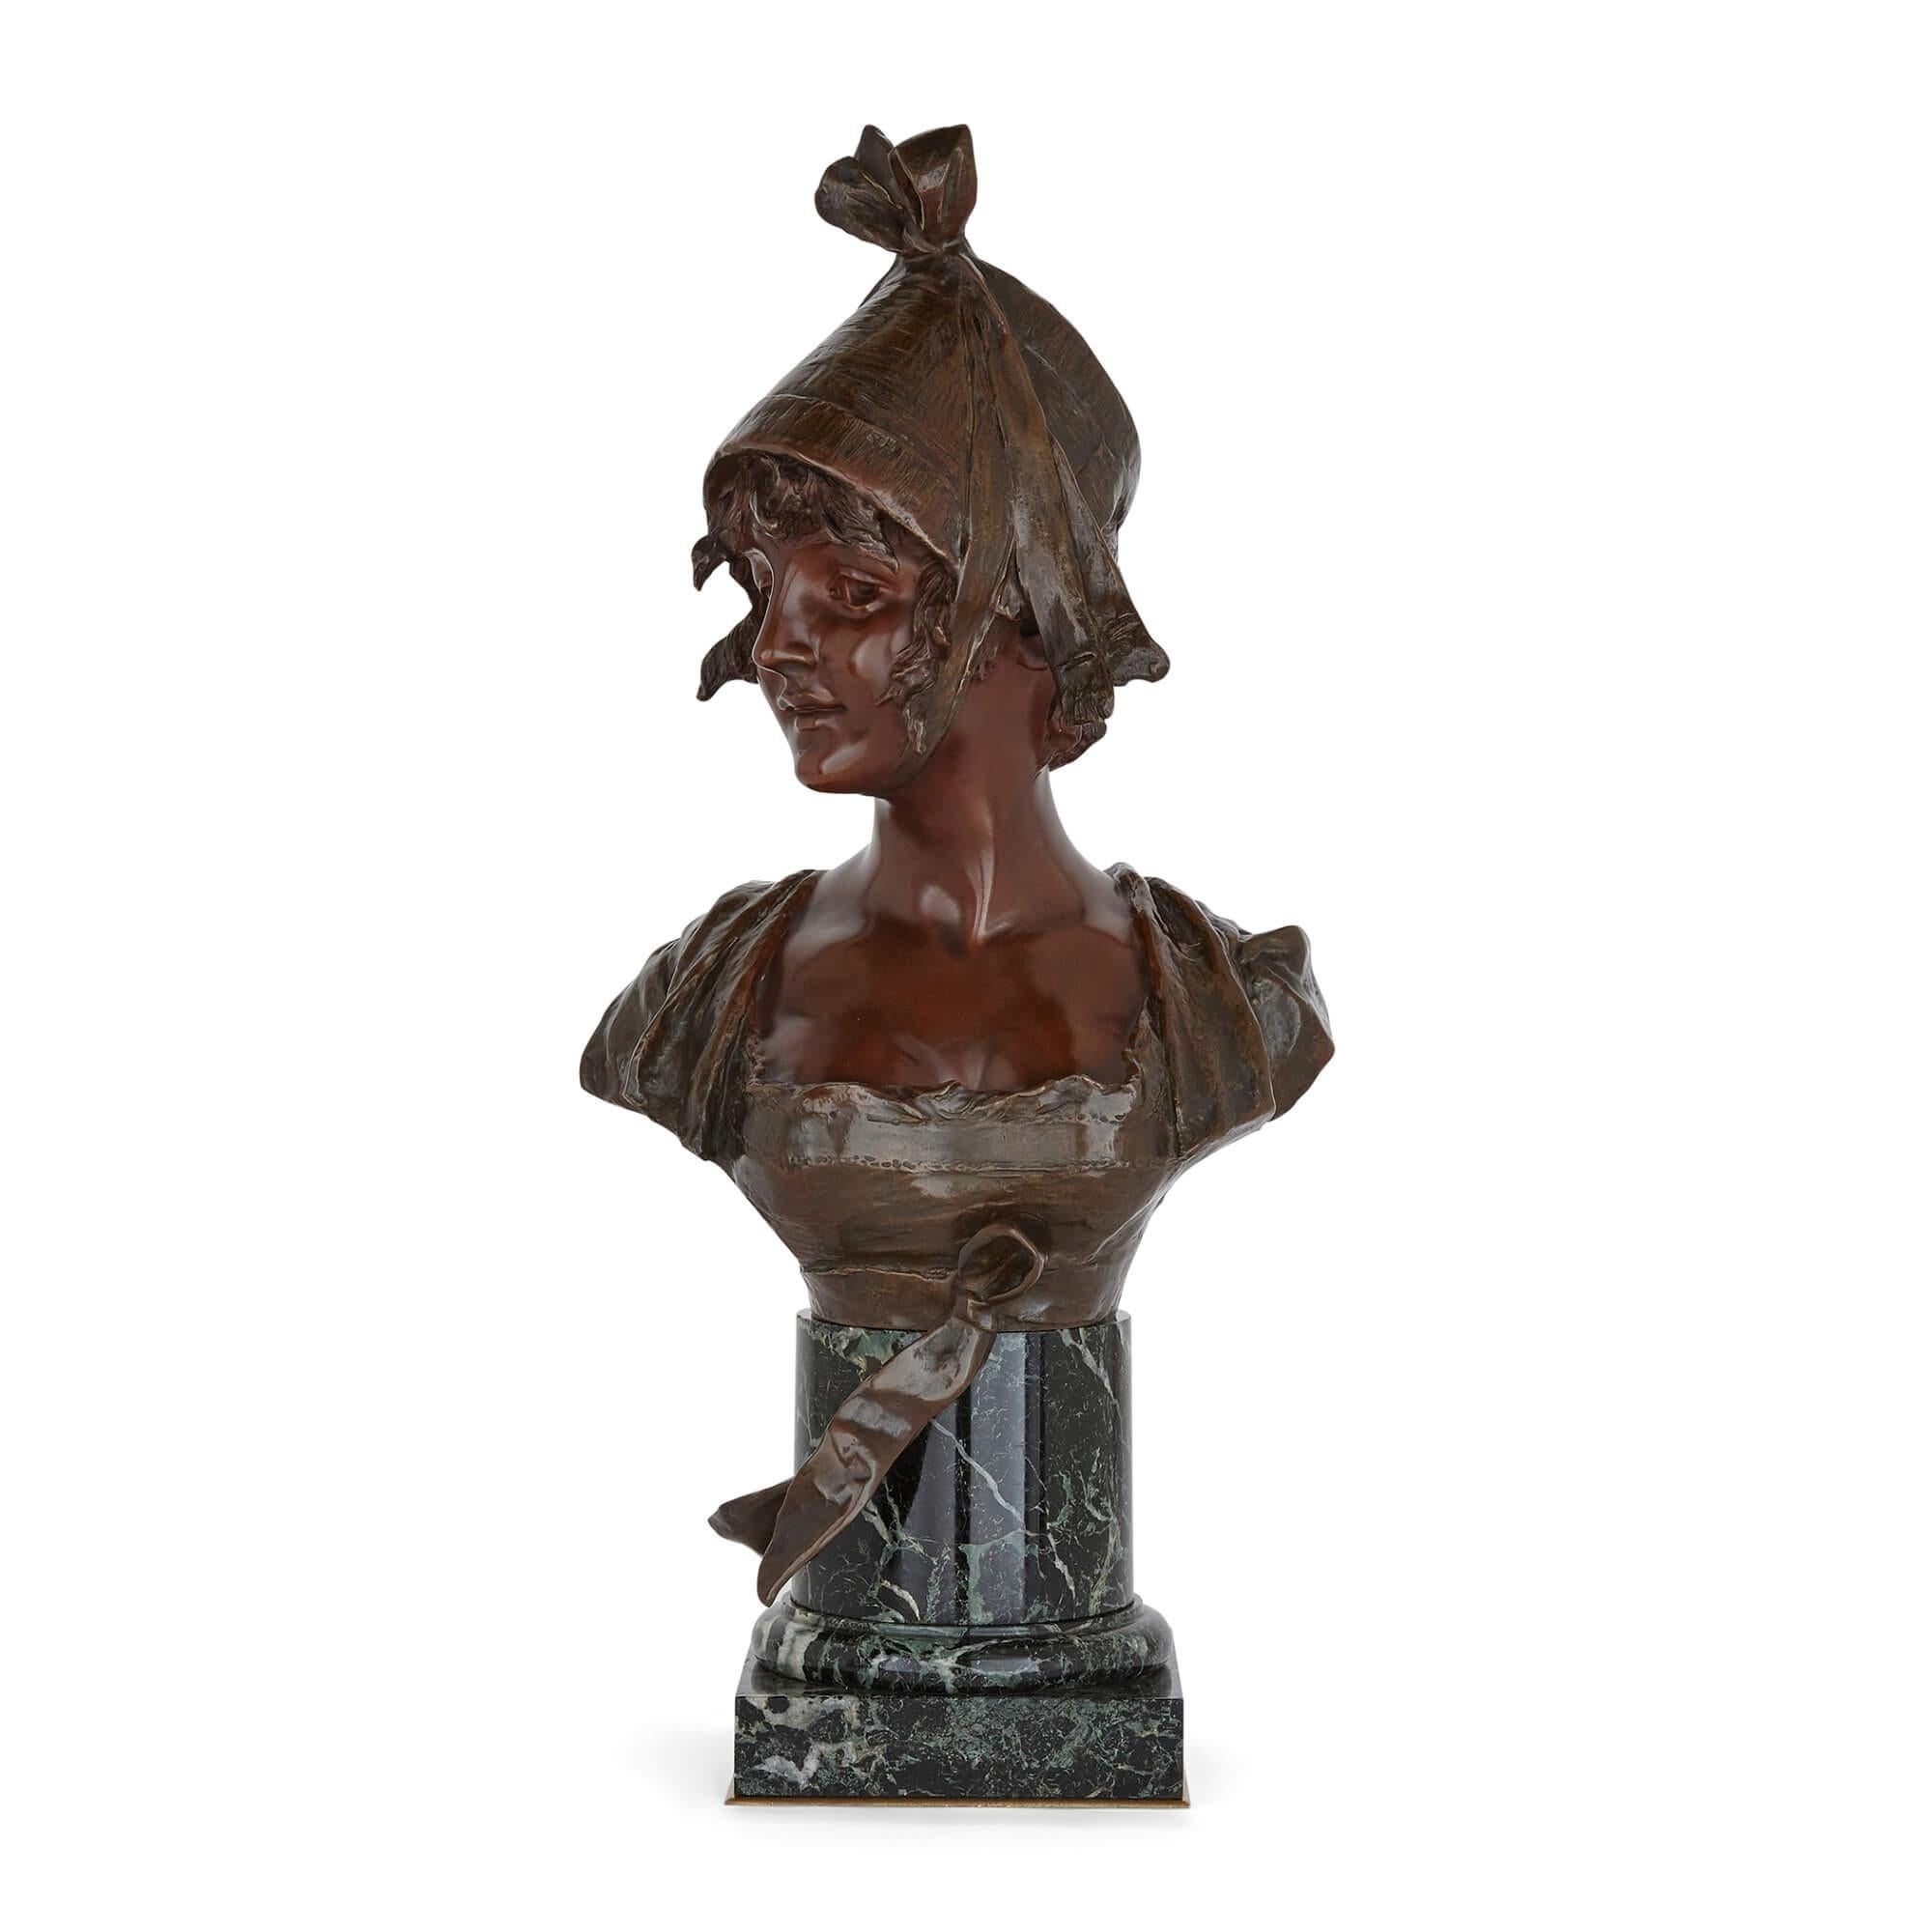 Buste en bronze sur socle en marbre de Georges van der Straeten
Belge, vers 1900
Mesures : Hauteur 69 cm, largeur 34 cm, profondeur 21 cm

Ce magnifique portrait en buste est l'œuvre du sculpteur belge Georges van der Straeten. Le buste